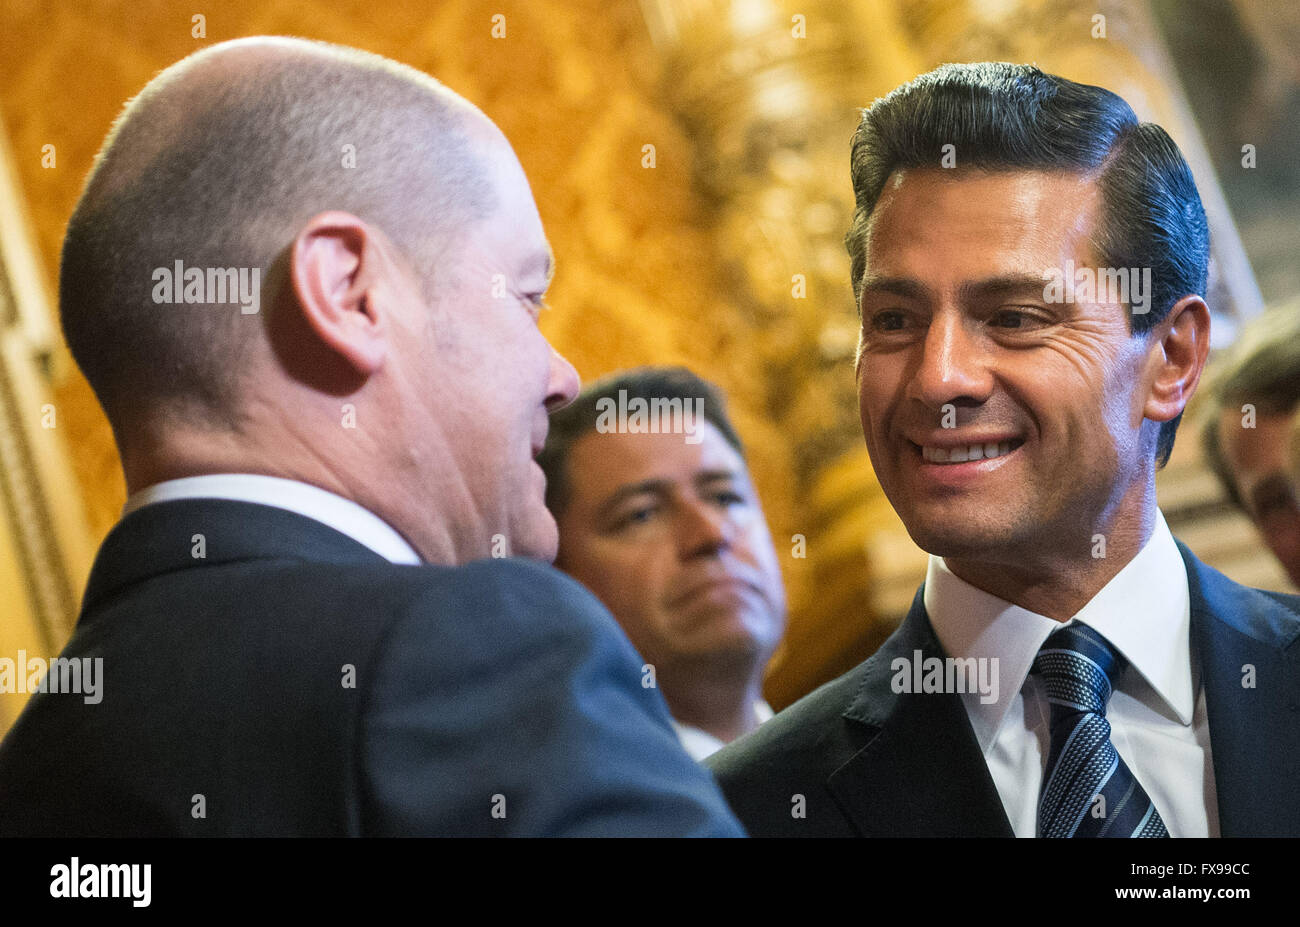 Hambourg, Allemagne. 12 avr, 2016. Le Président mexicain Enrique Pena Nieto (R) parle avec le maire de Hambourg, Olaf Scholz à l'hôtel de ville de Hambourg, Allemagne, 12 avril 2016. Photo : Lukas SCHULZE/dpa/Alamy Live News Banque D'Images